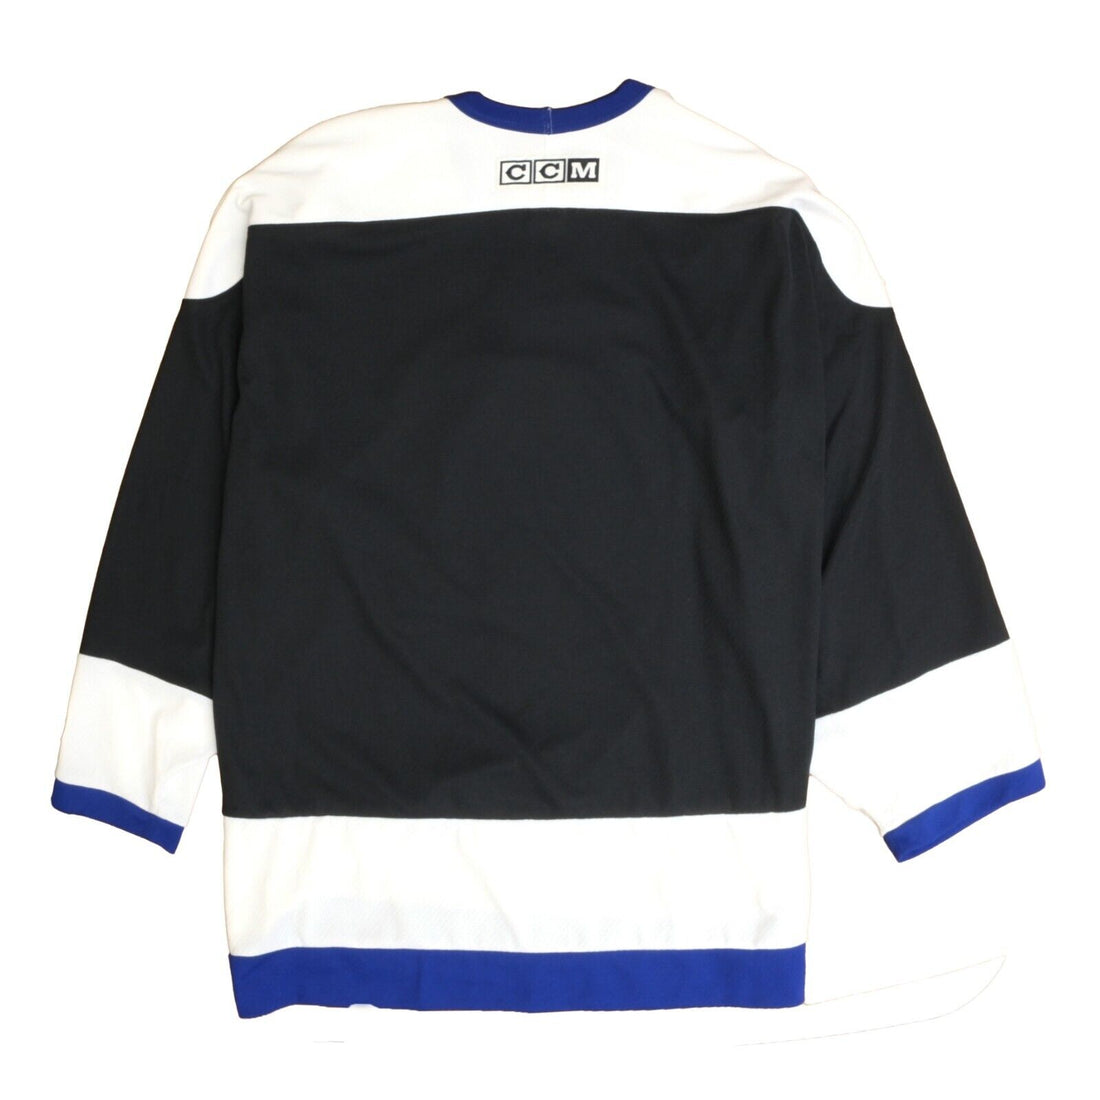 Vintage Tampa Bay Lightning CCM Hockey Jersey Size XL Black NHL